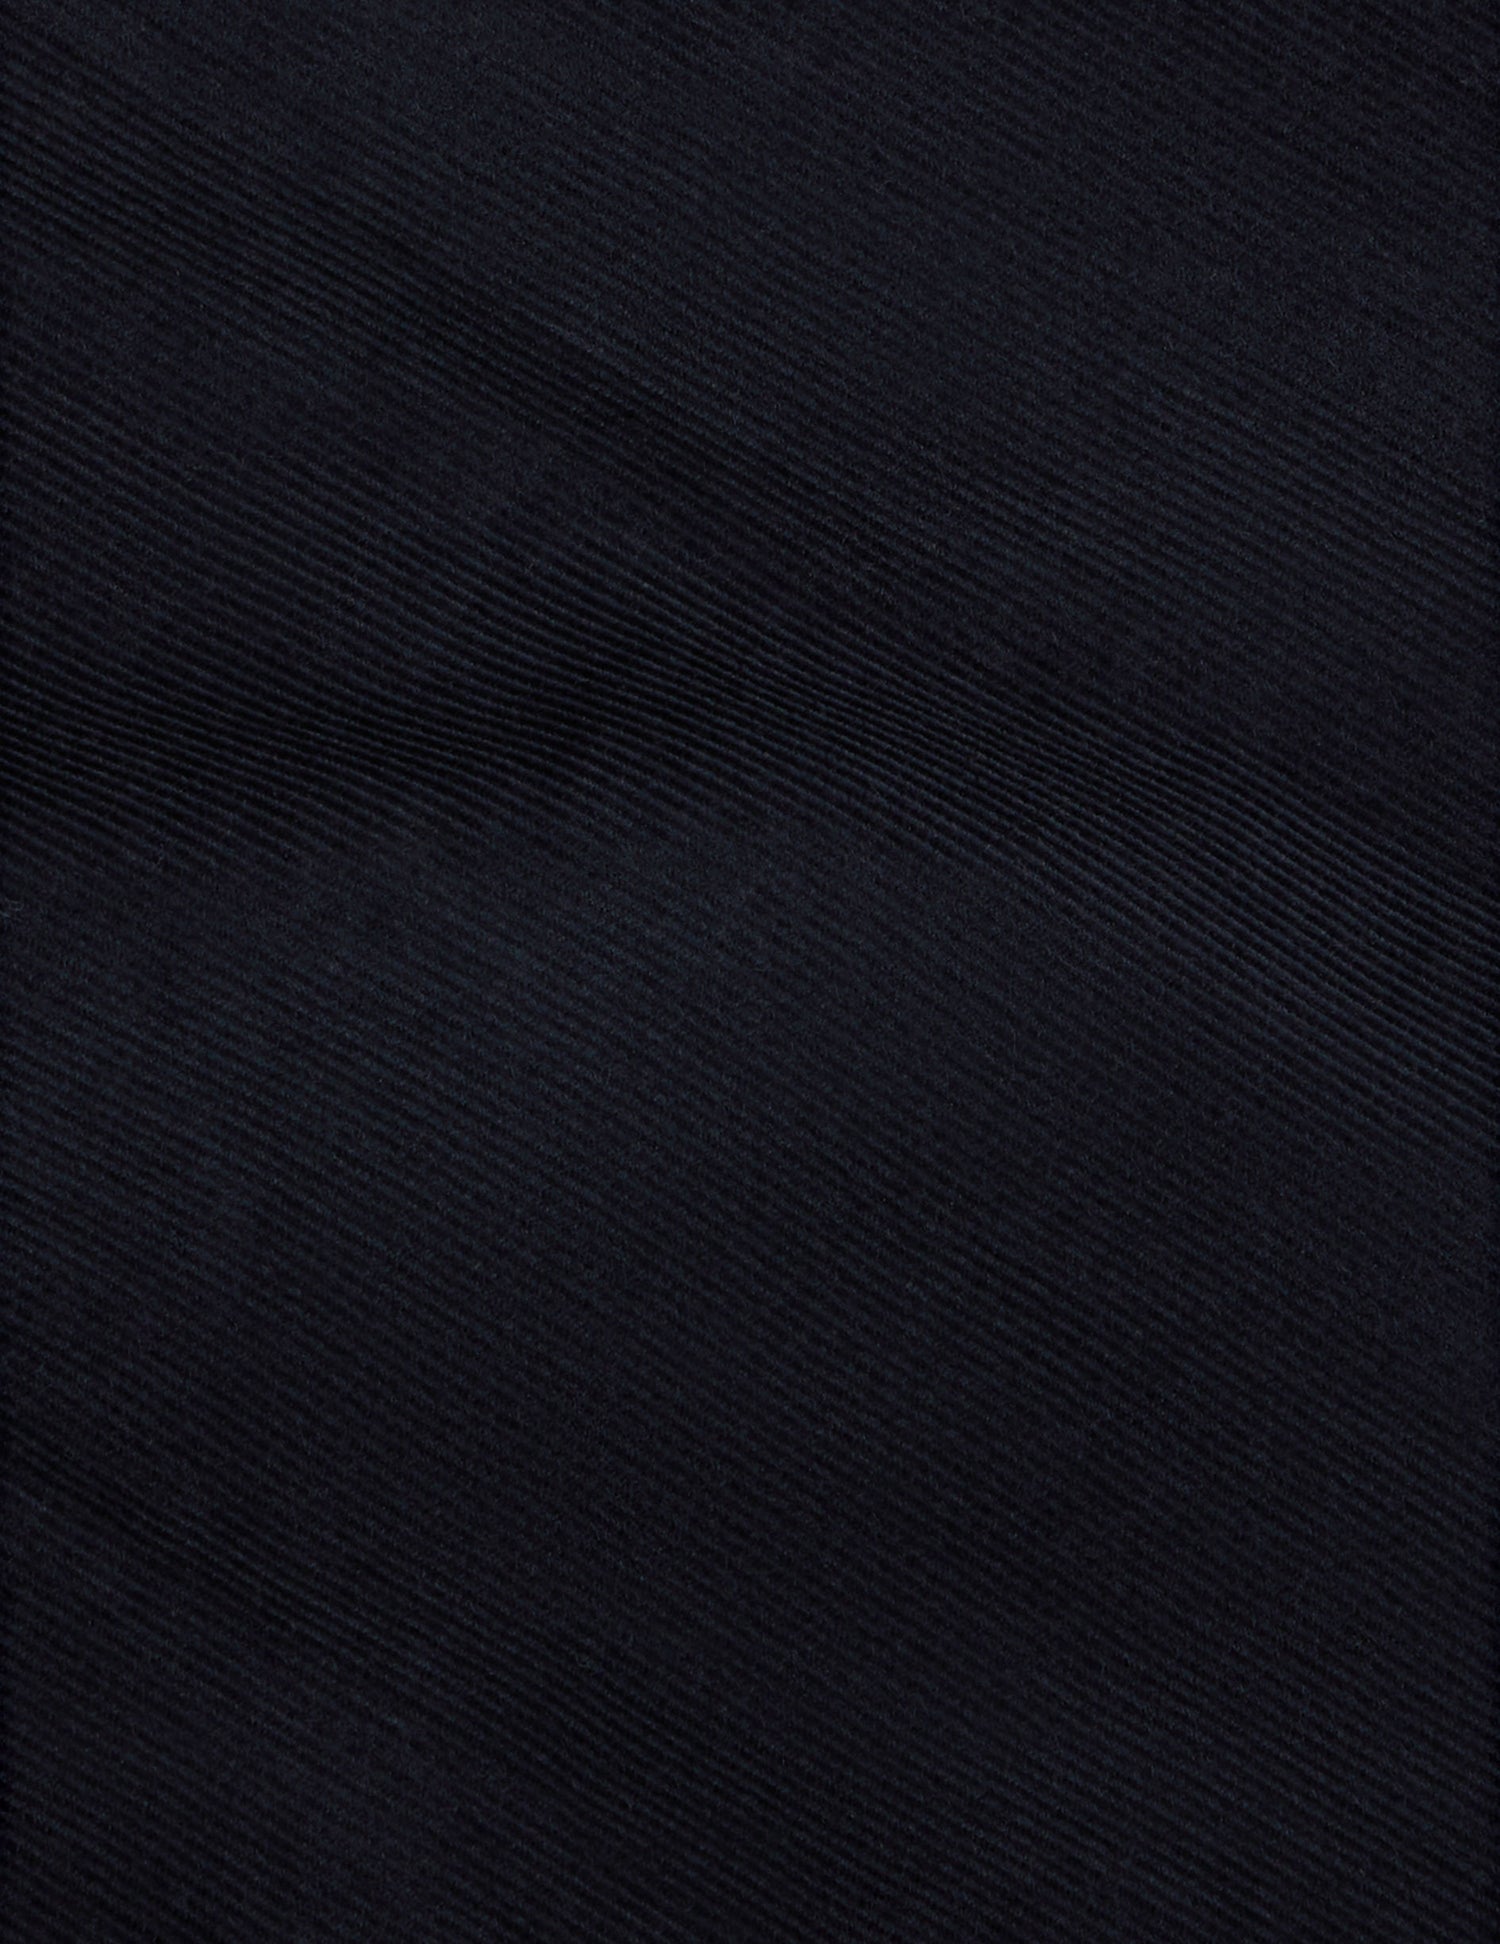 Unisex “Je t'aime” navy blue shirt - Velvet - Figaret Collar#8